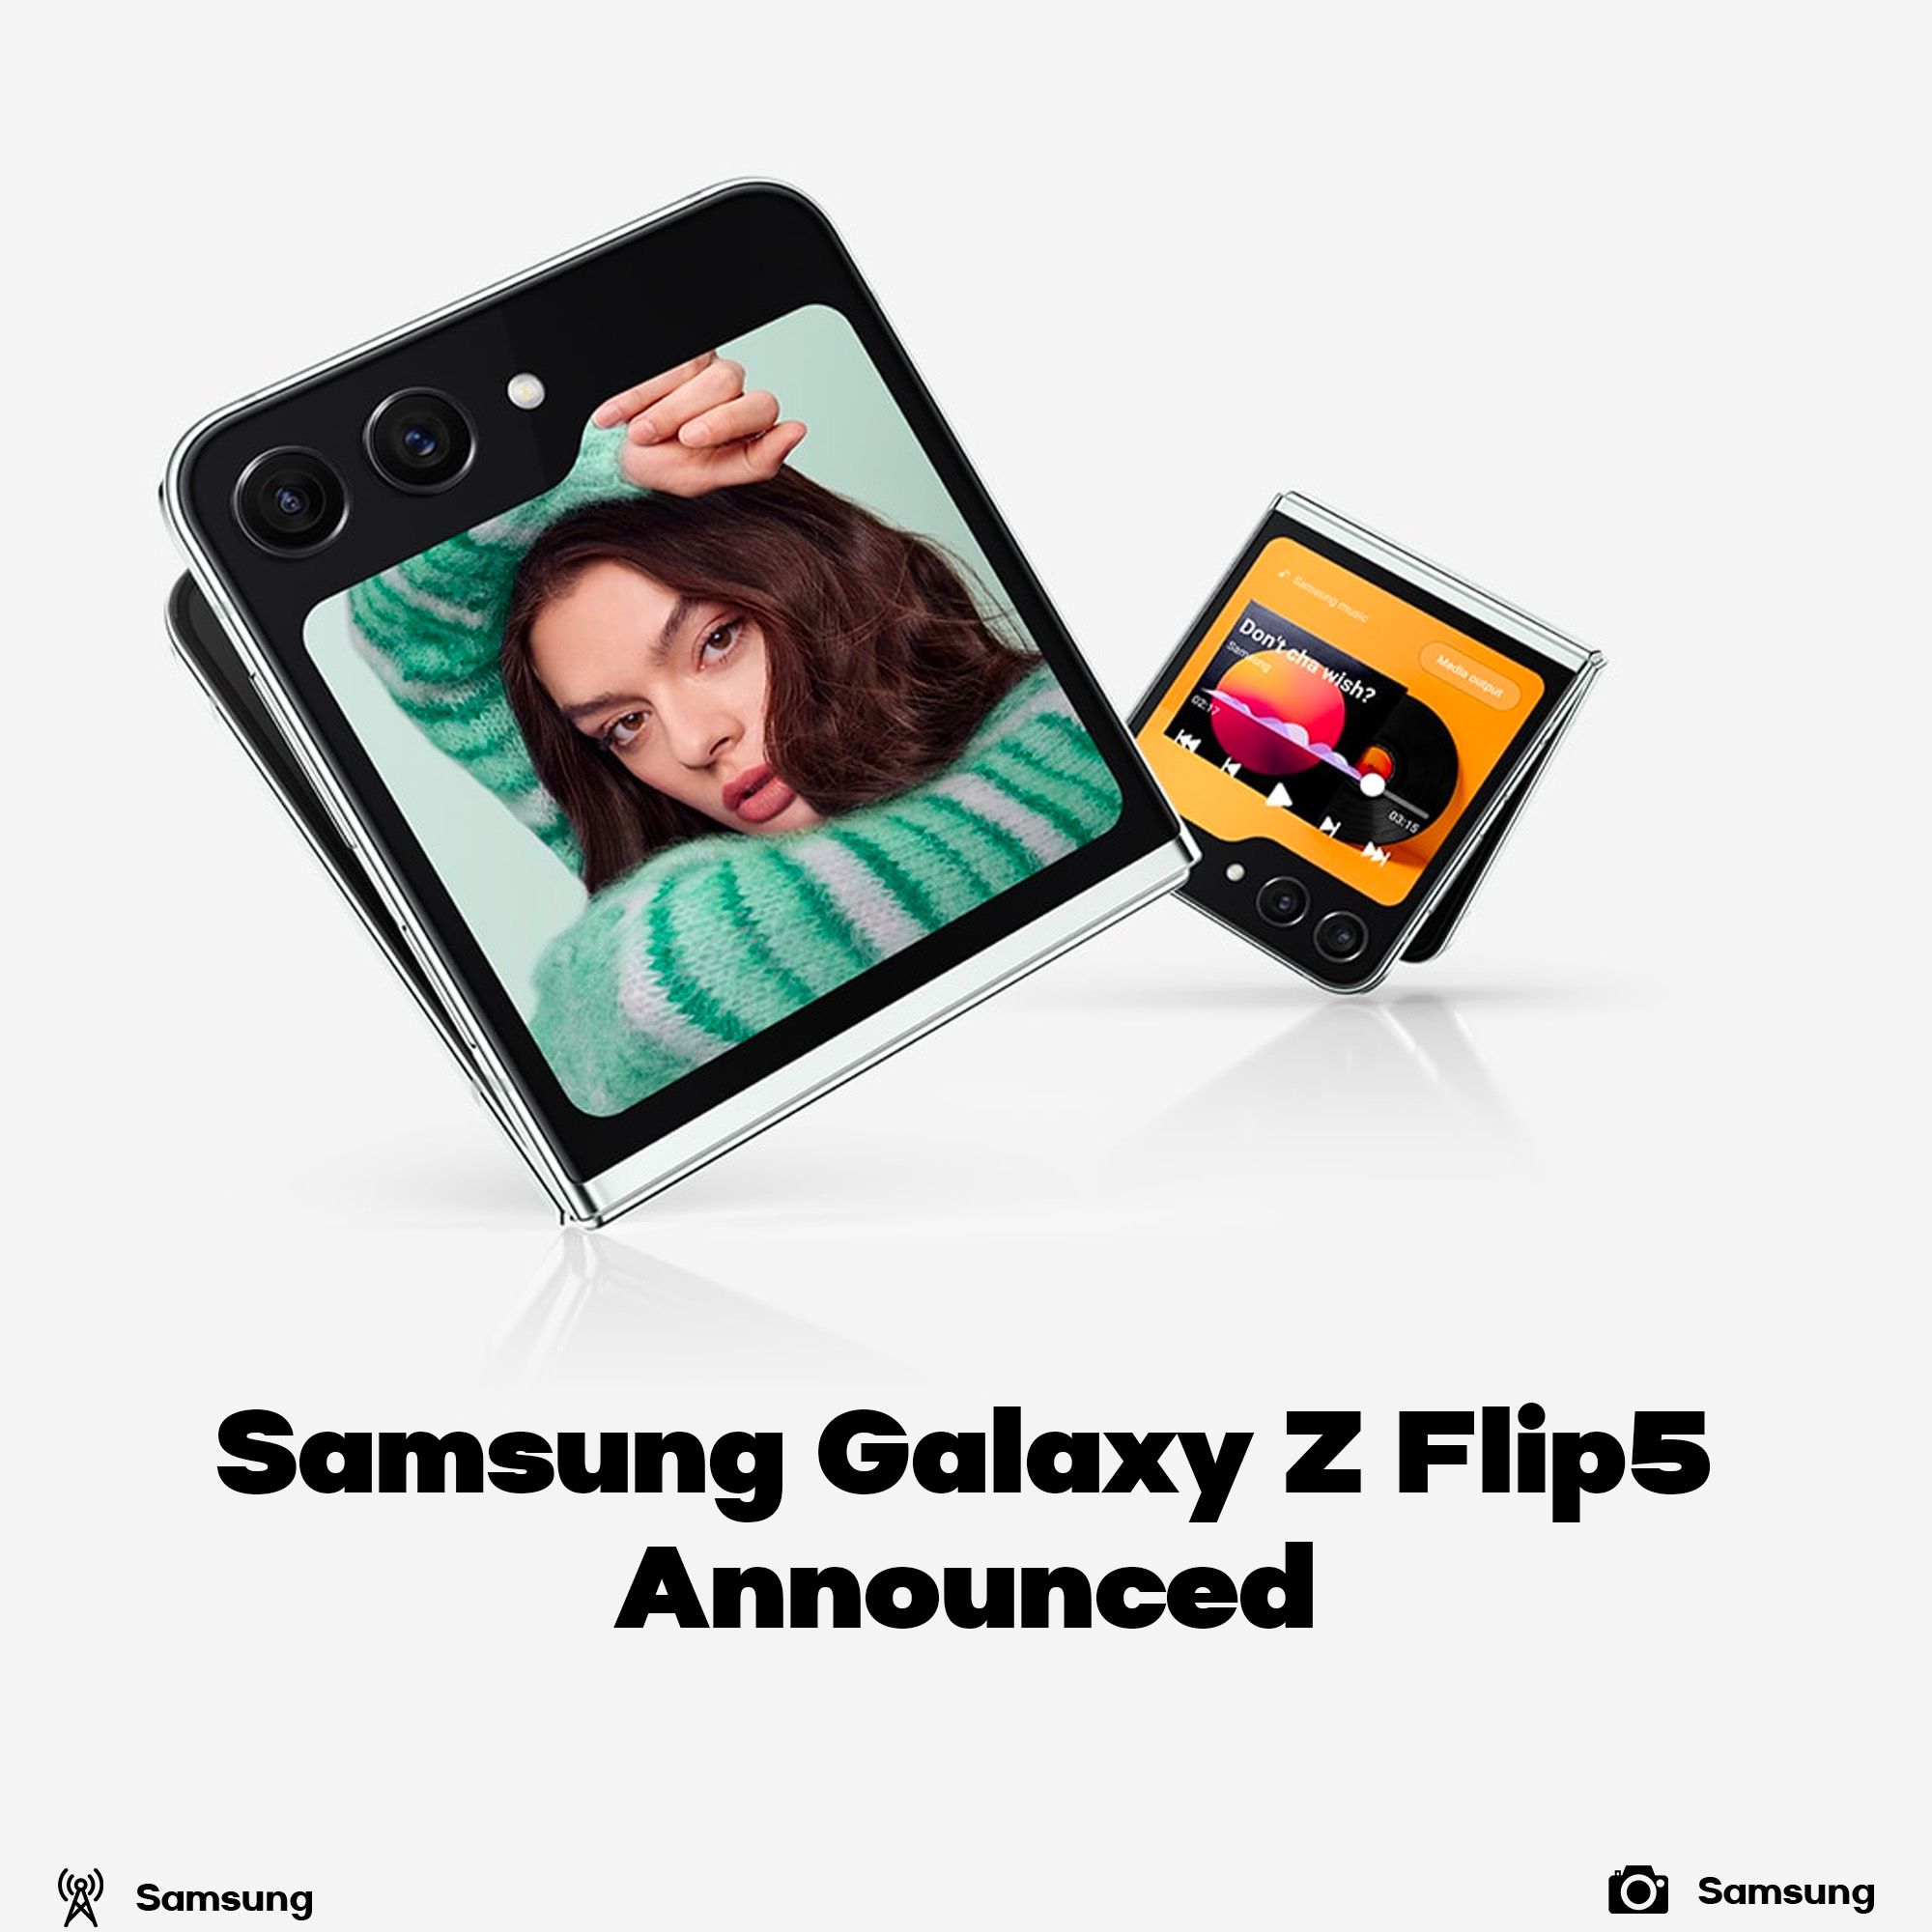 Samsung Galaxy Z Flip5 announced